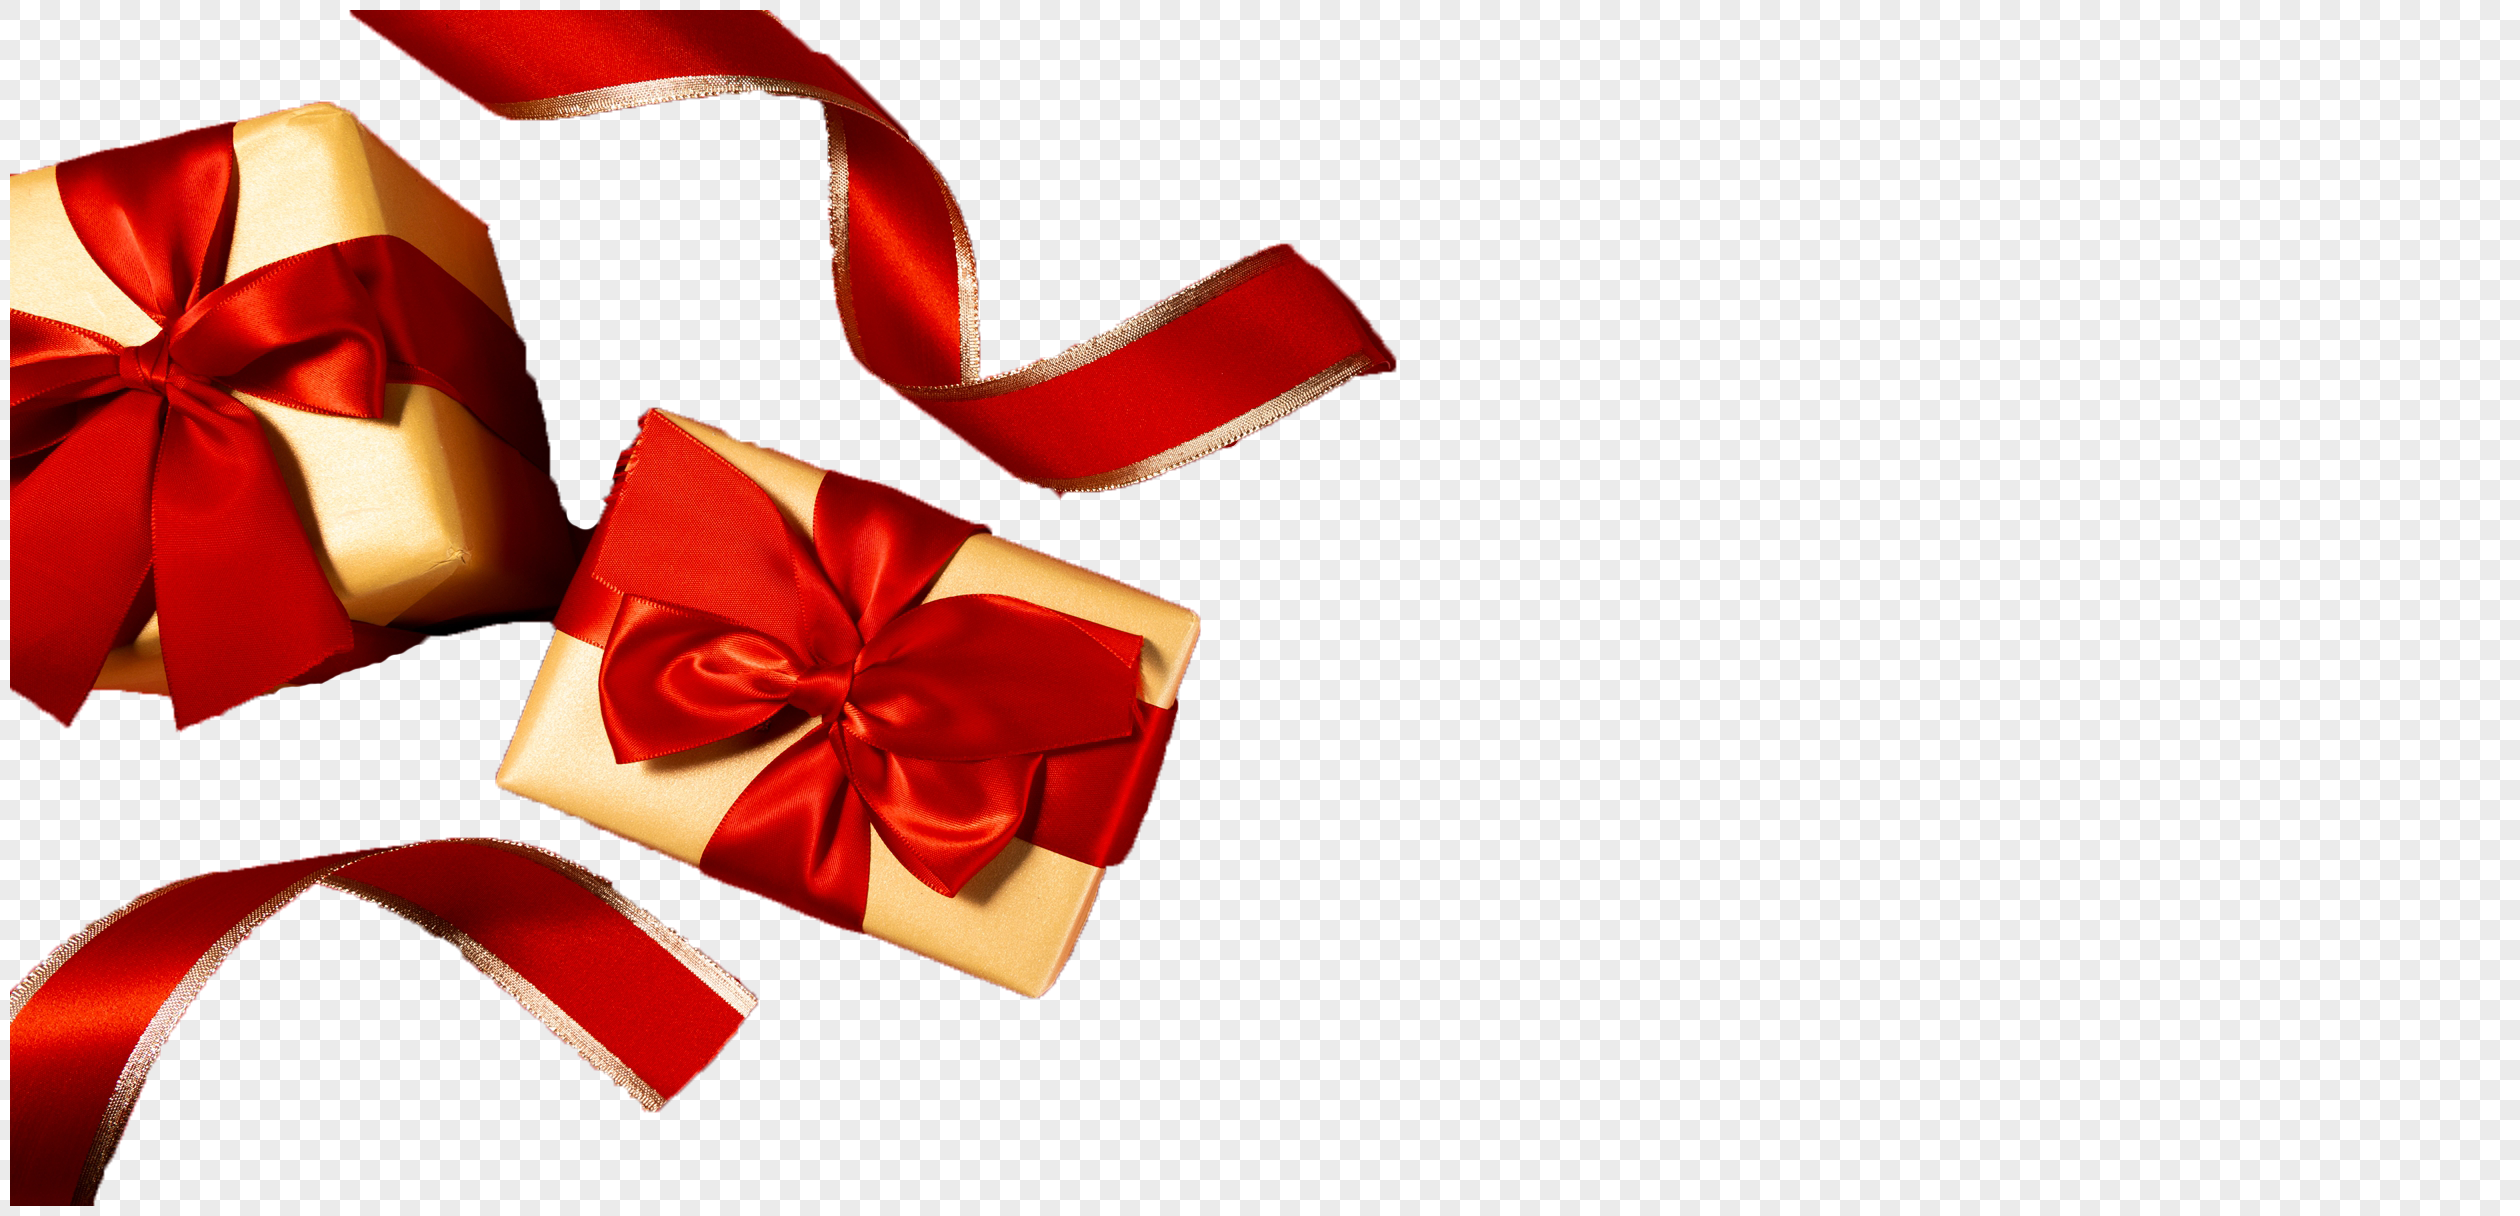 Download Gift Ribbon Image HQ PNG Image | FreePNGImg